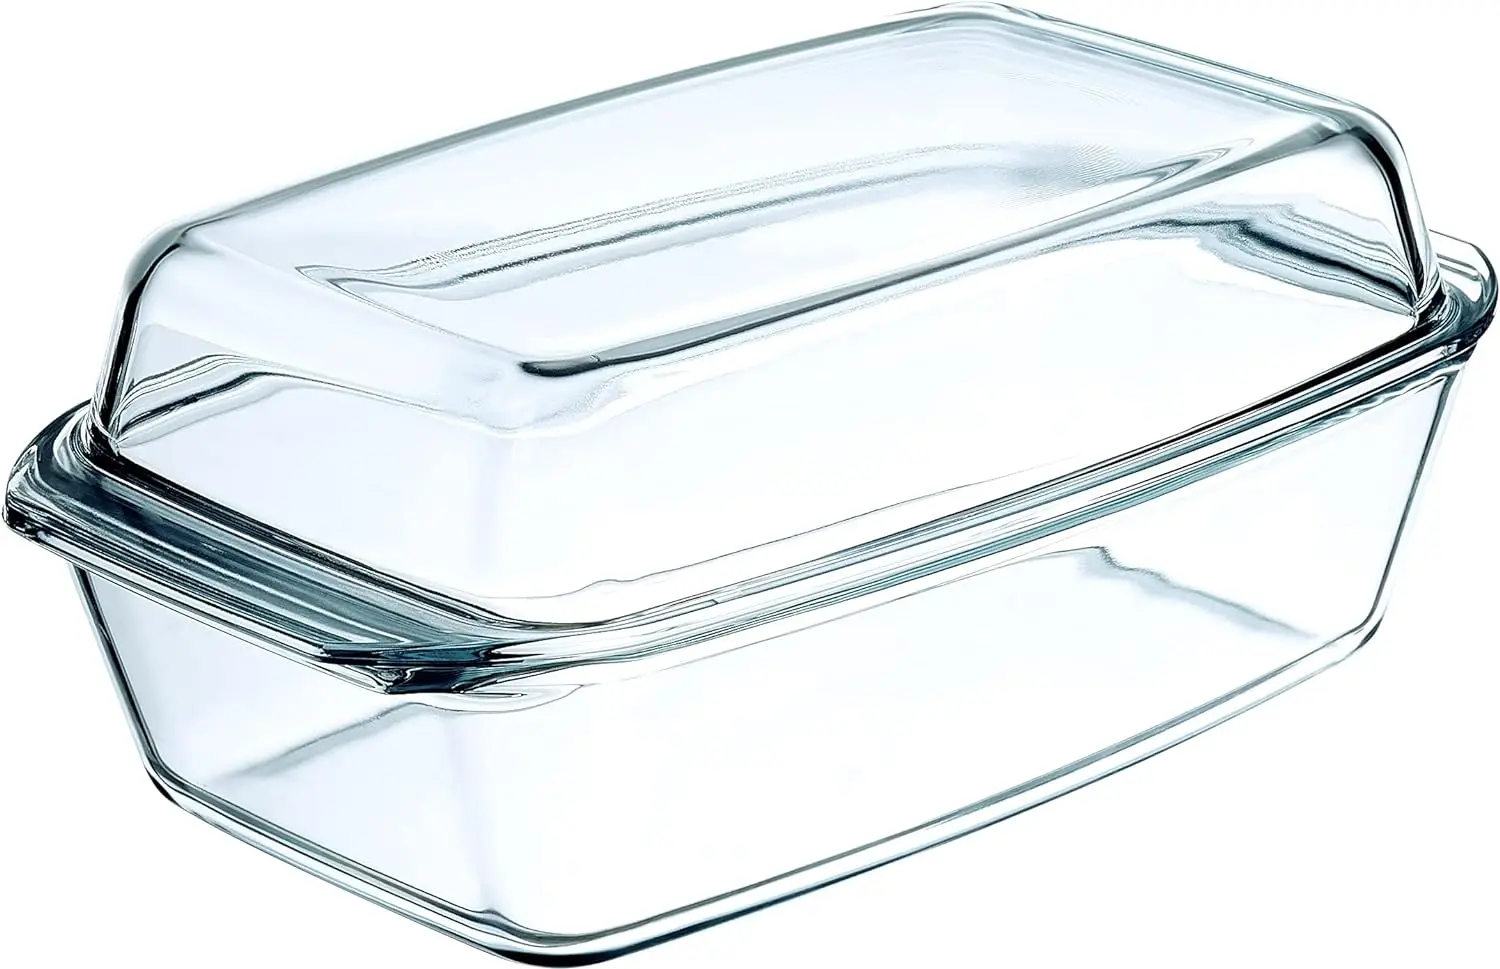 

Стеклянная кастрюля, безопасная посуда с крышкой для духовки, посуда с продолговатым покрытием для выпечки, сервировки, приготовления пищи, микроволновой печи и посуды